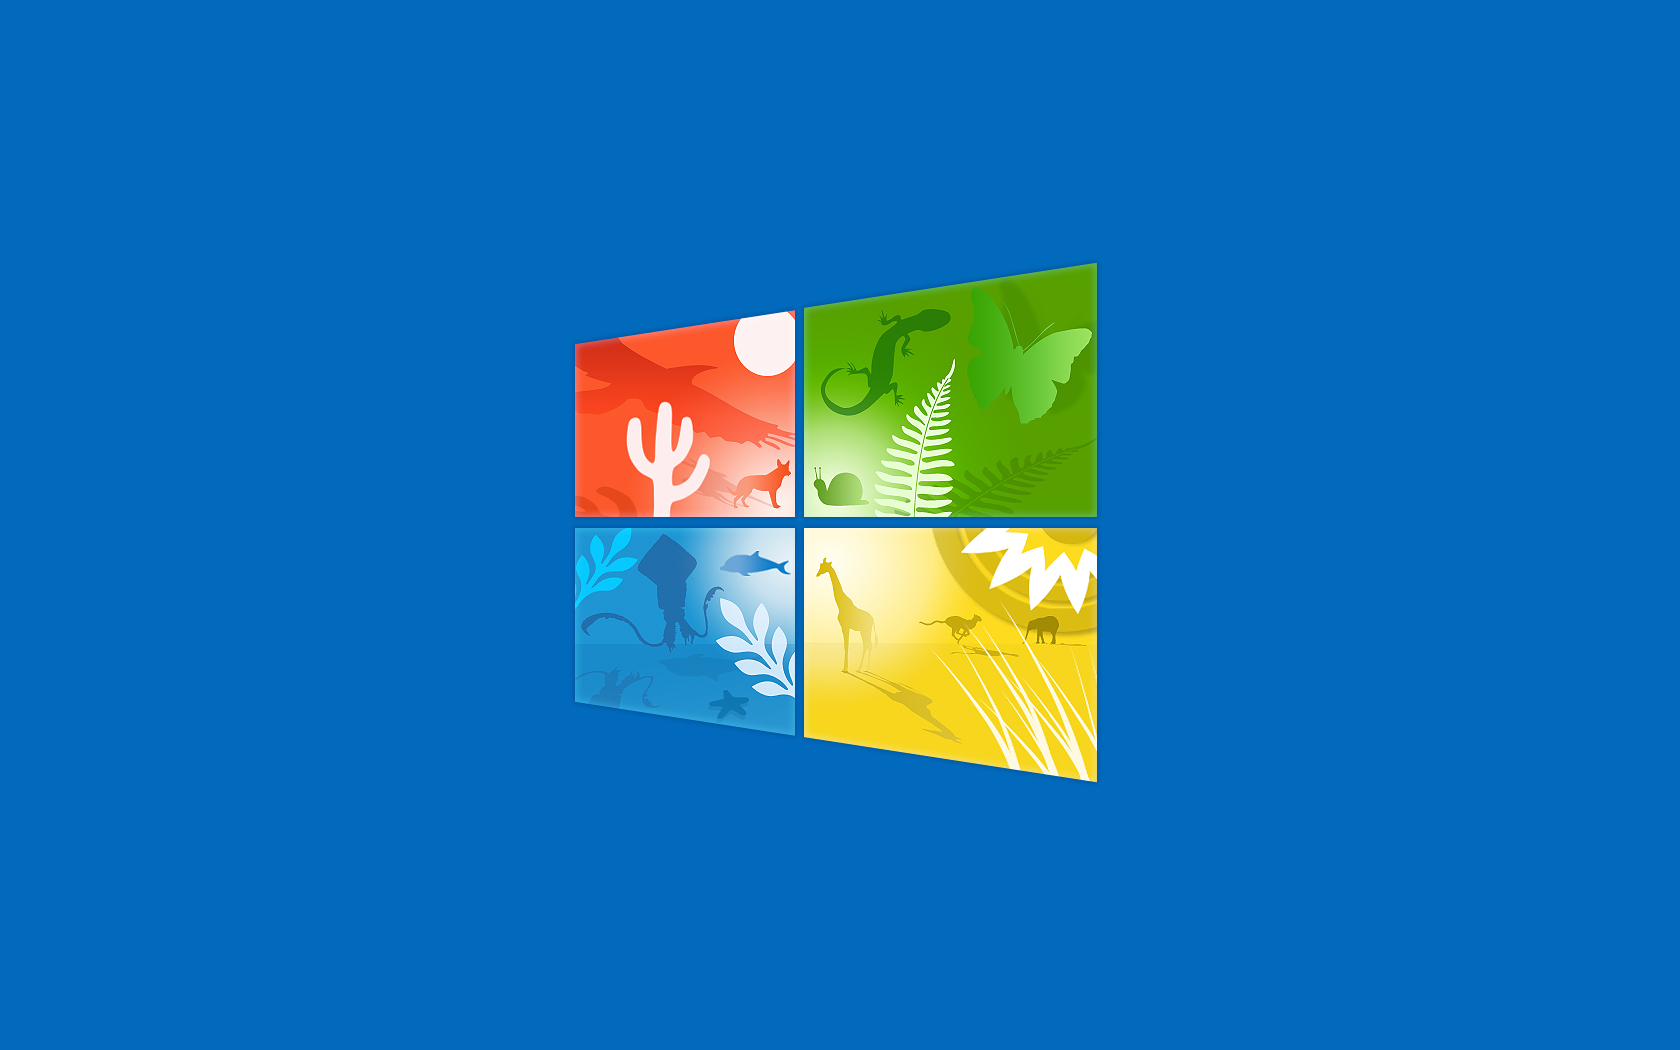 Windows 10 Wallpaper by Travis Lutz